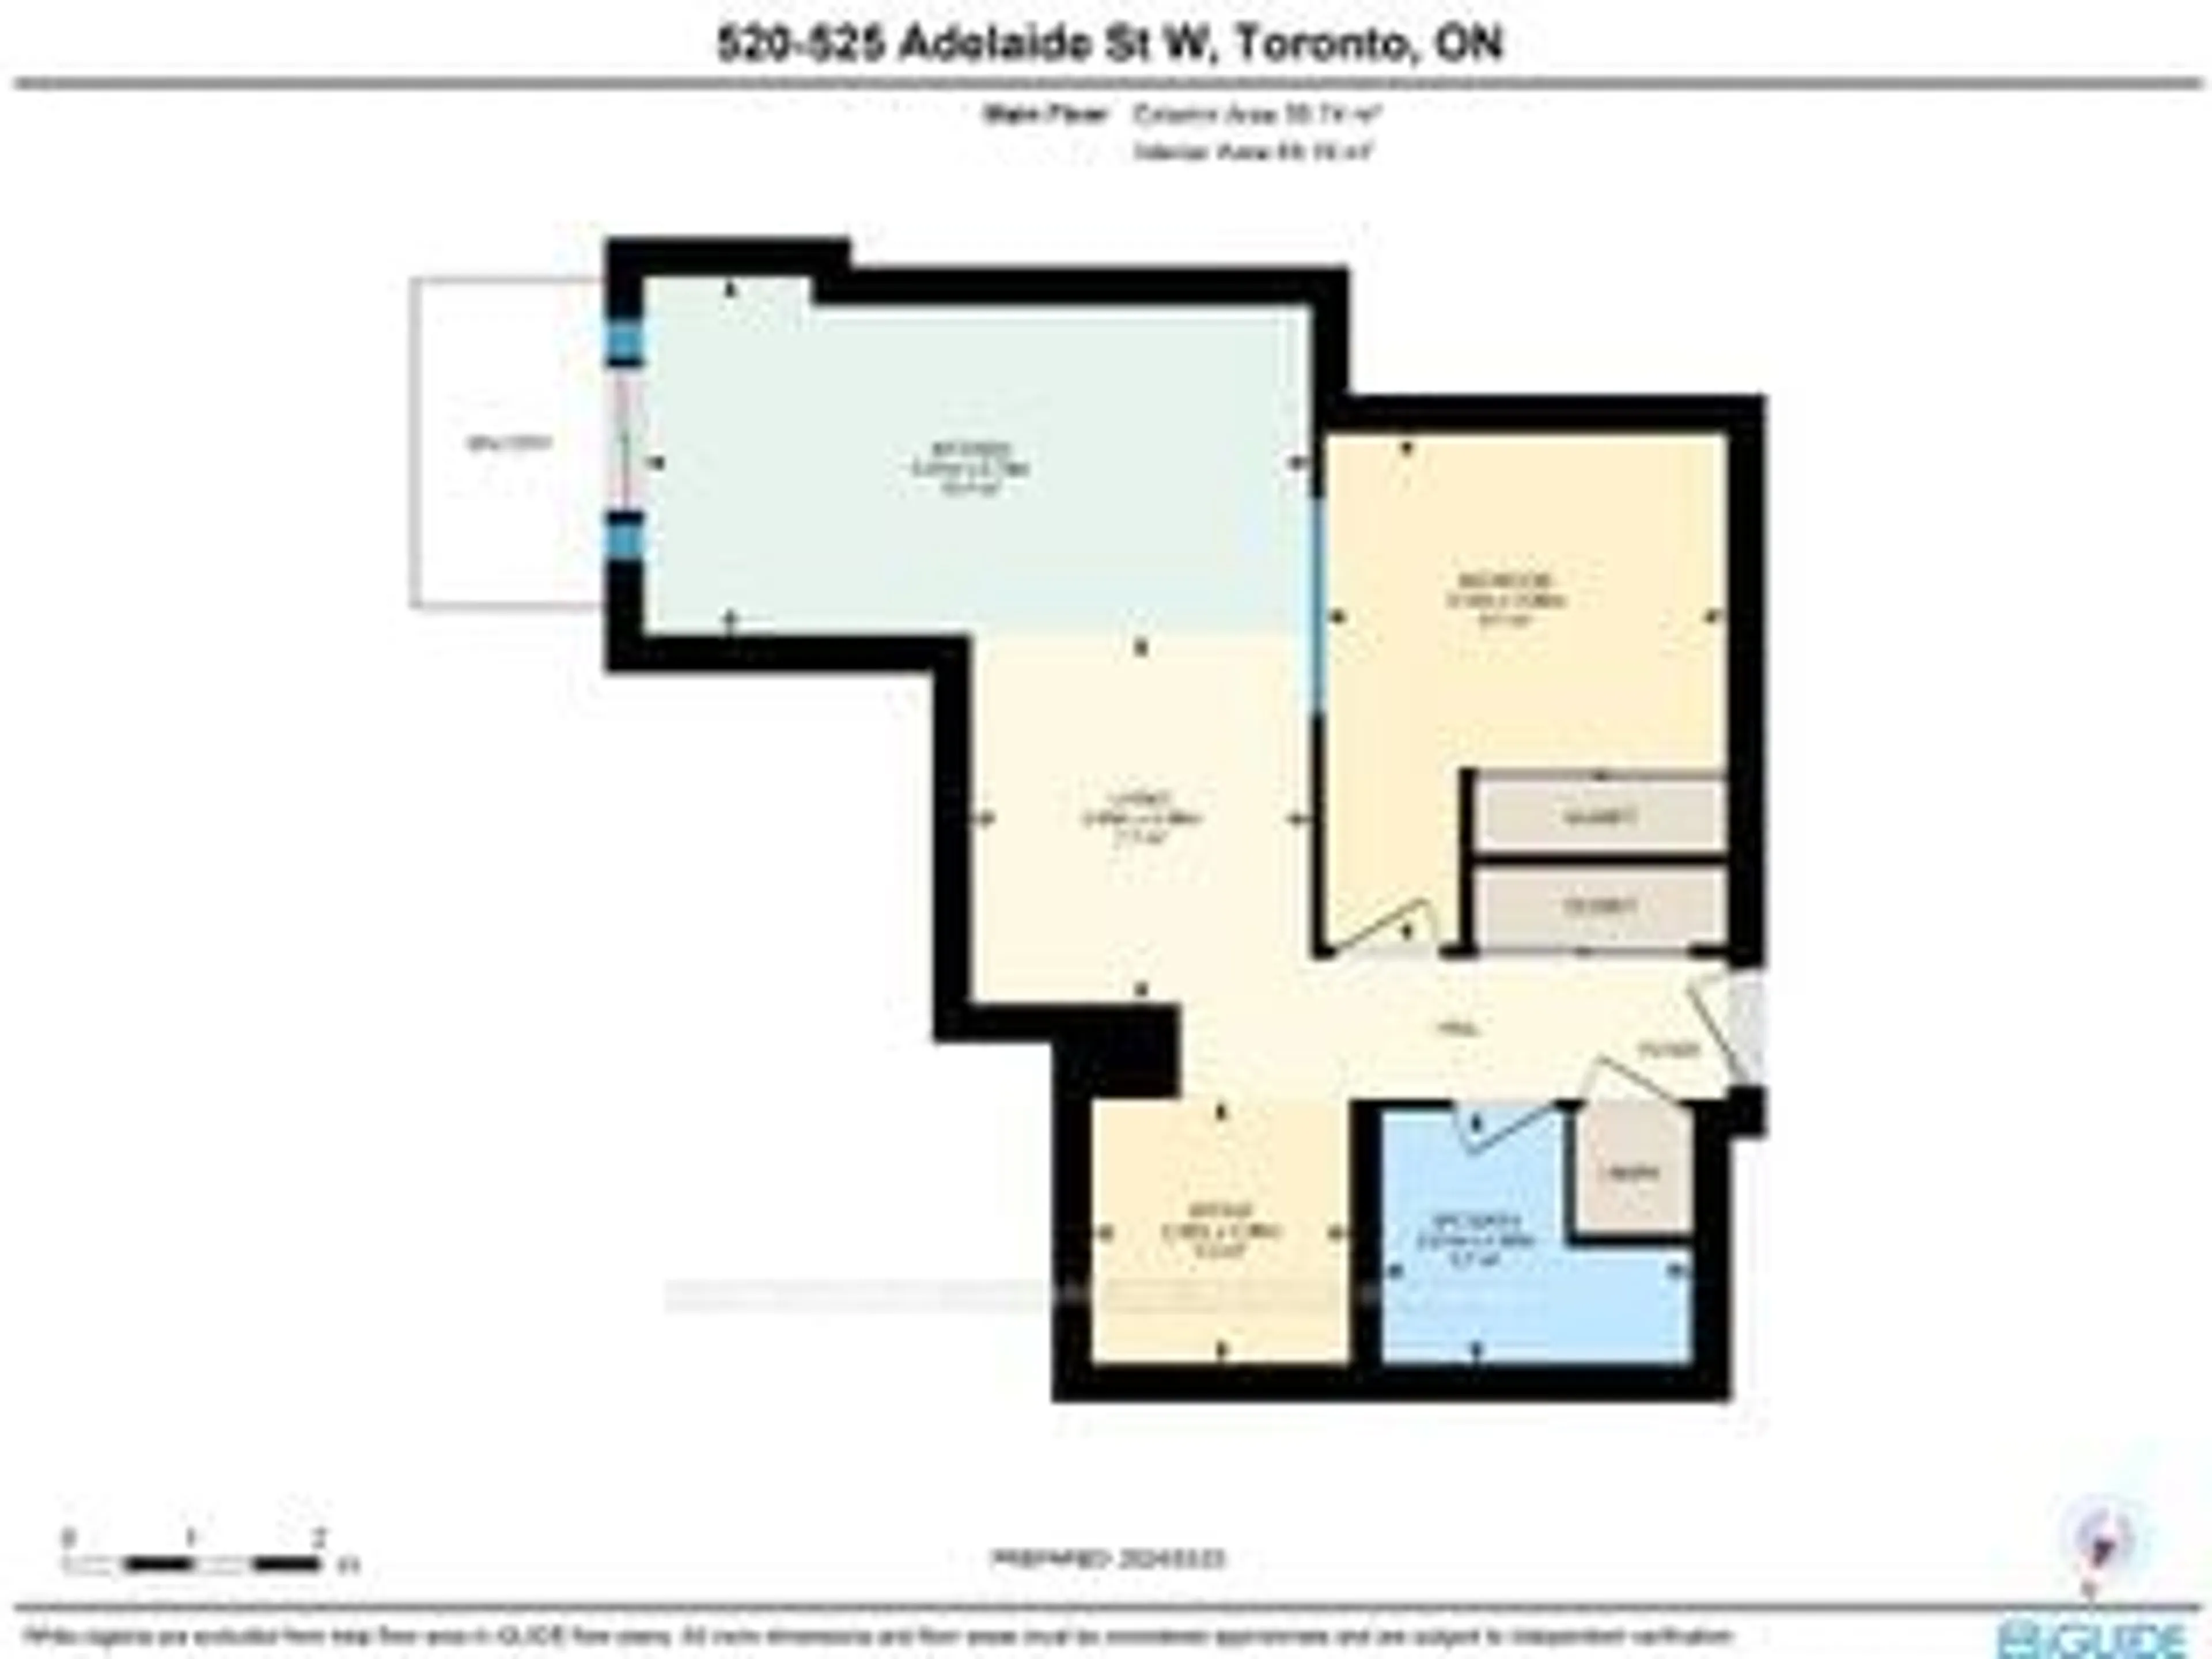 Floor plan for 525 Adelaide St #520, Toronto Ontario M5V 1T4